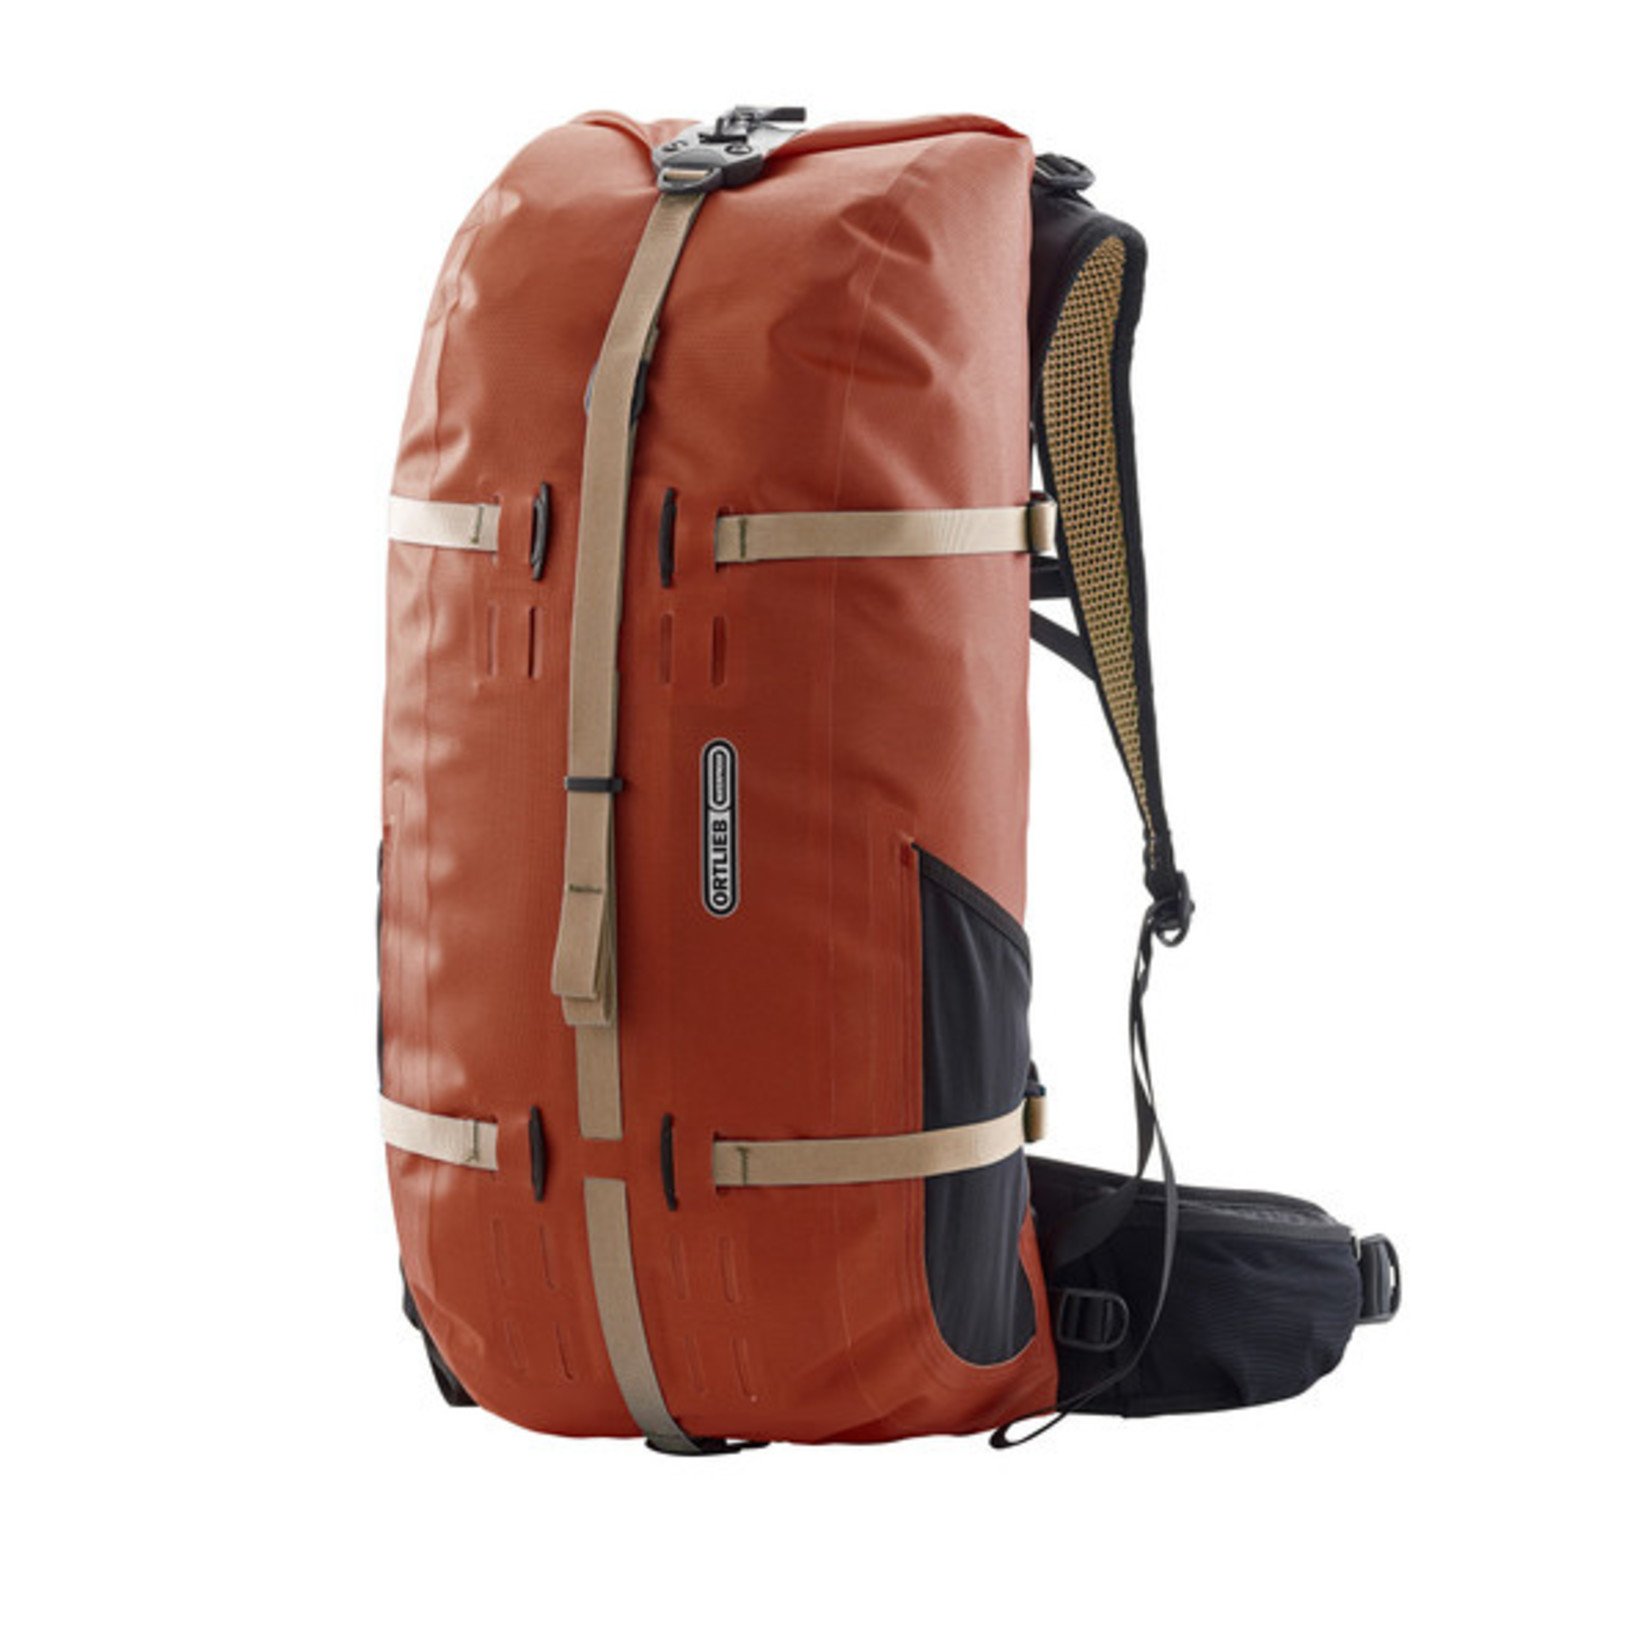 Ortlieb Ortlieb Atrack Waterproof Backpack R7055 - 35L Rooibos